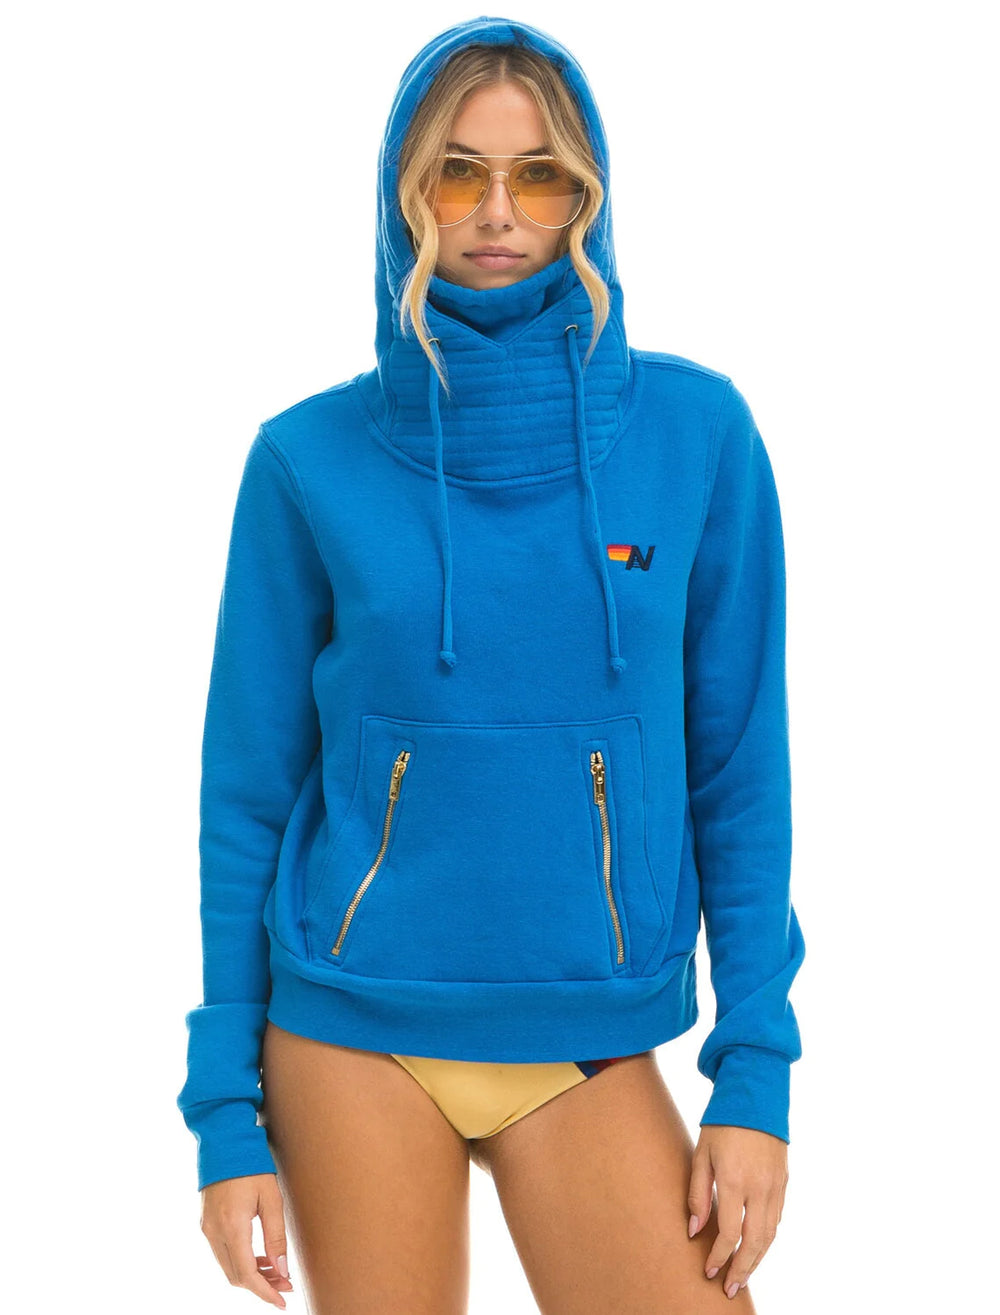 Model wearing Aviator Nation's ninja pullover hoodie in ocean.